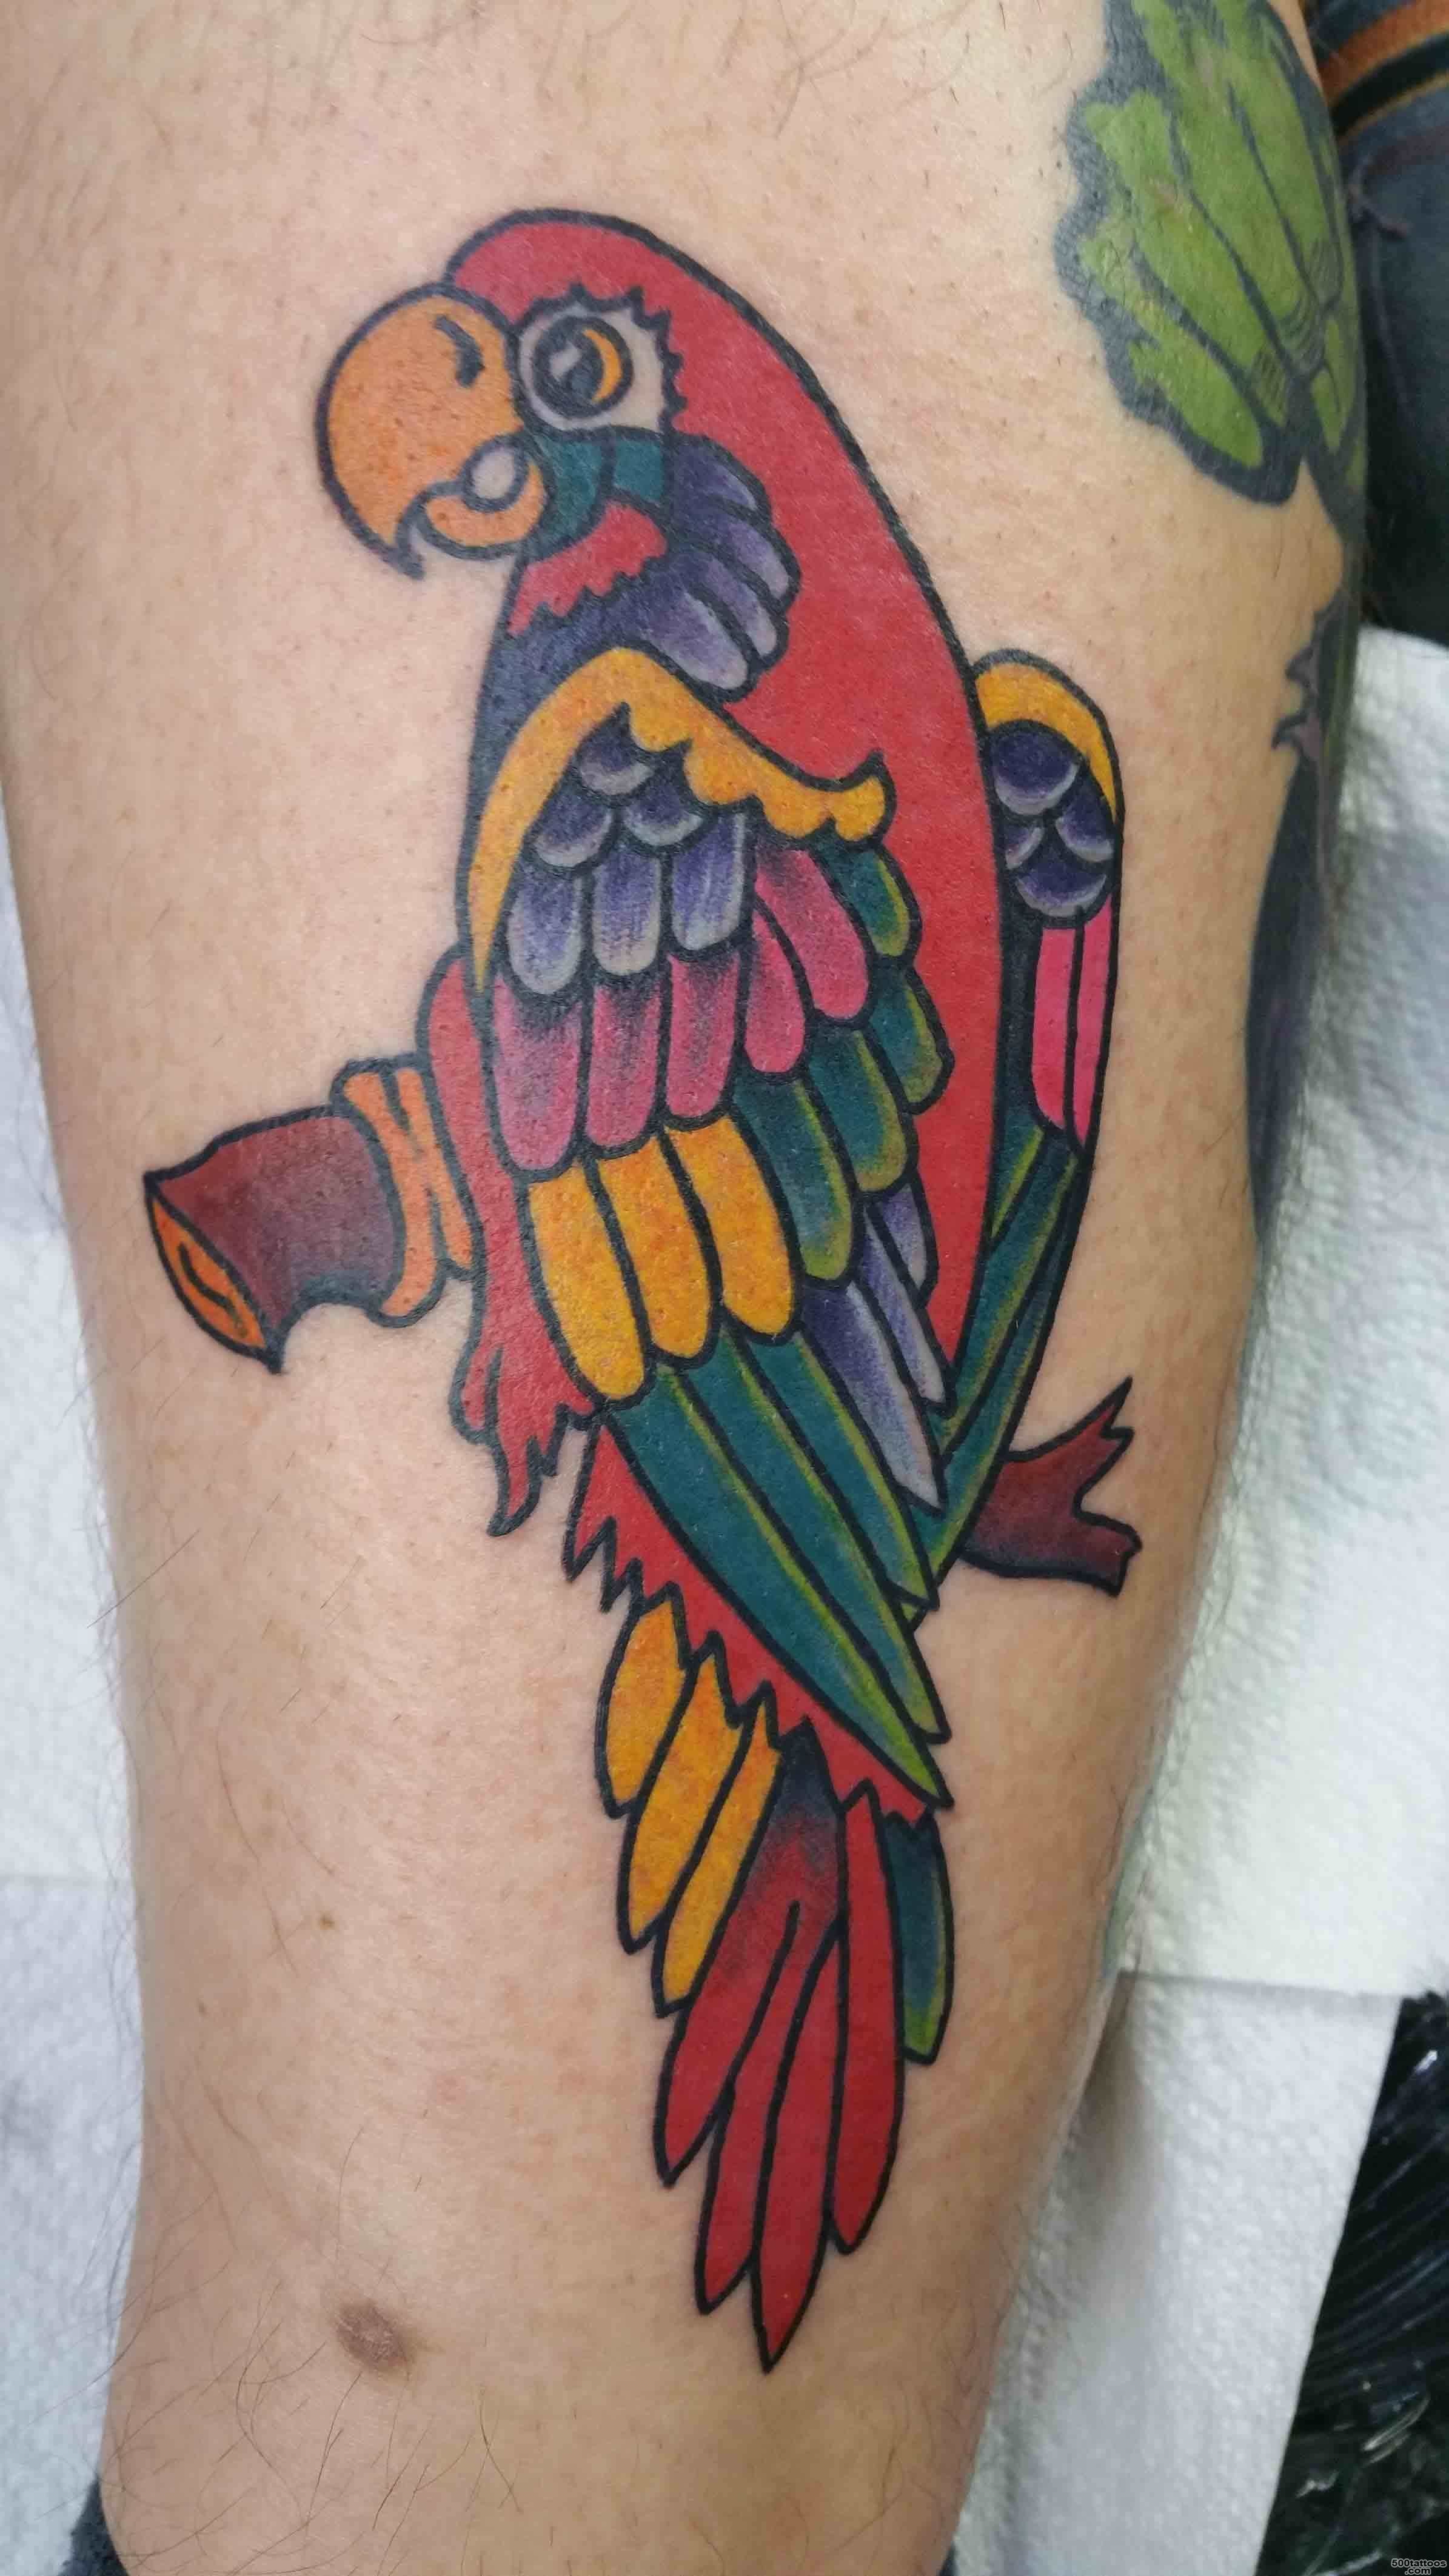 Cool Parrot Tattoo Design For Leg Calf By Dave Winn_29